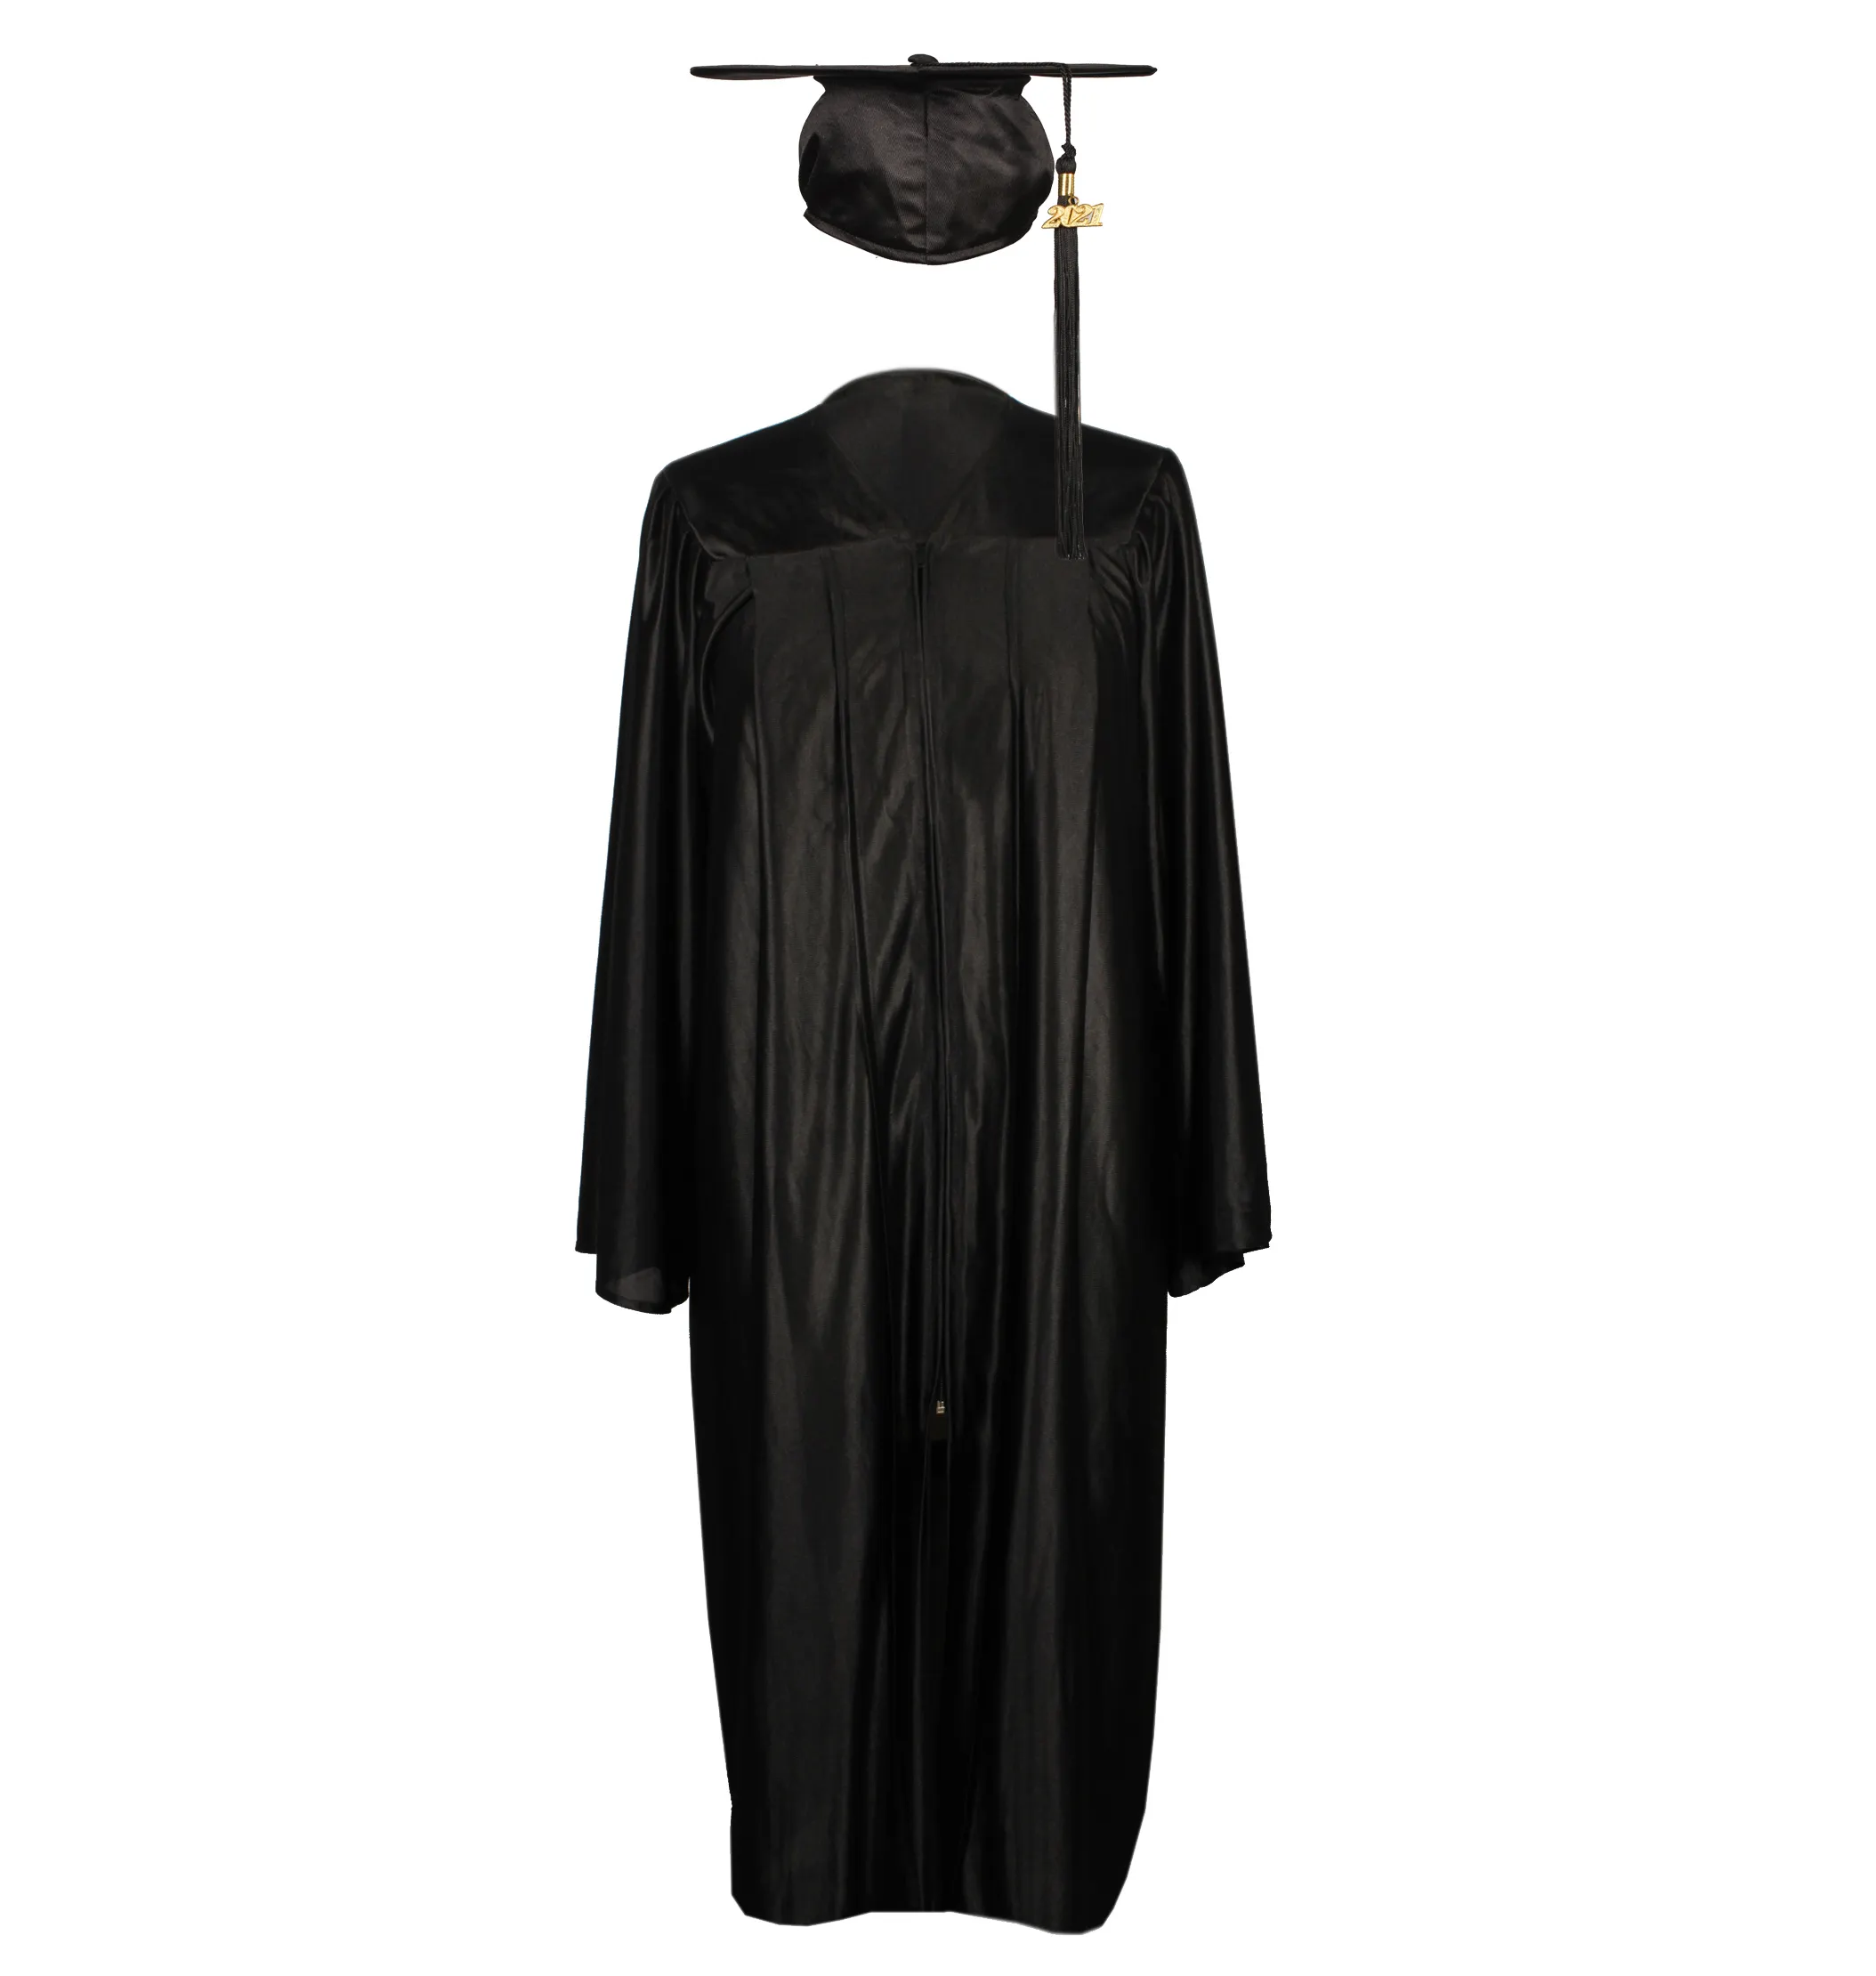 Gaun dan Topi Wisuda Hitam Mengkilap 2021 untuk Gaun Wisuda Dewasa atau Gaun Wisuda Universitas